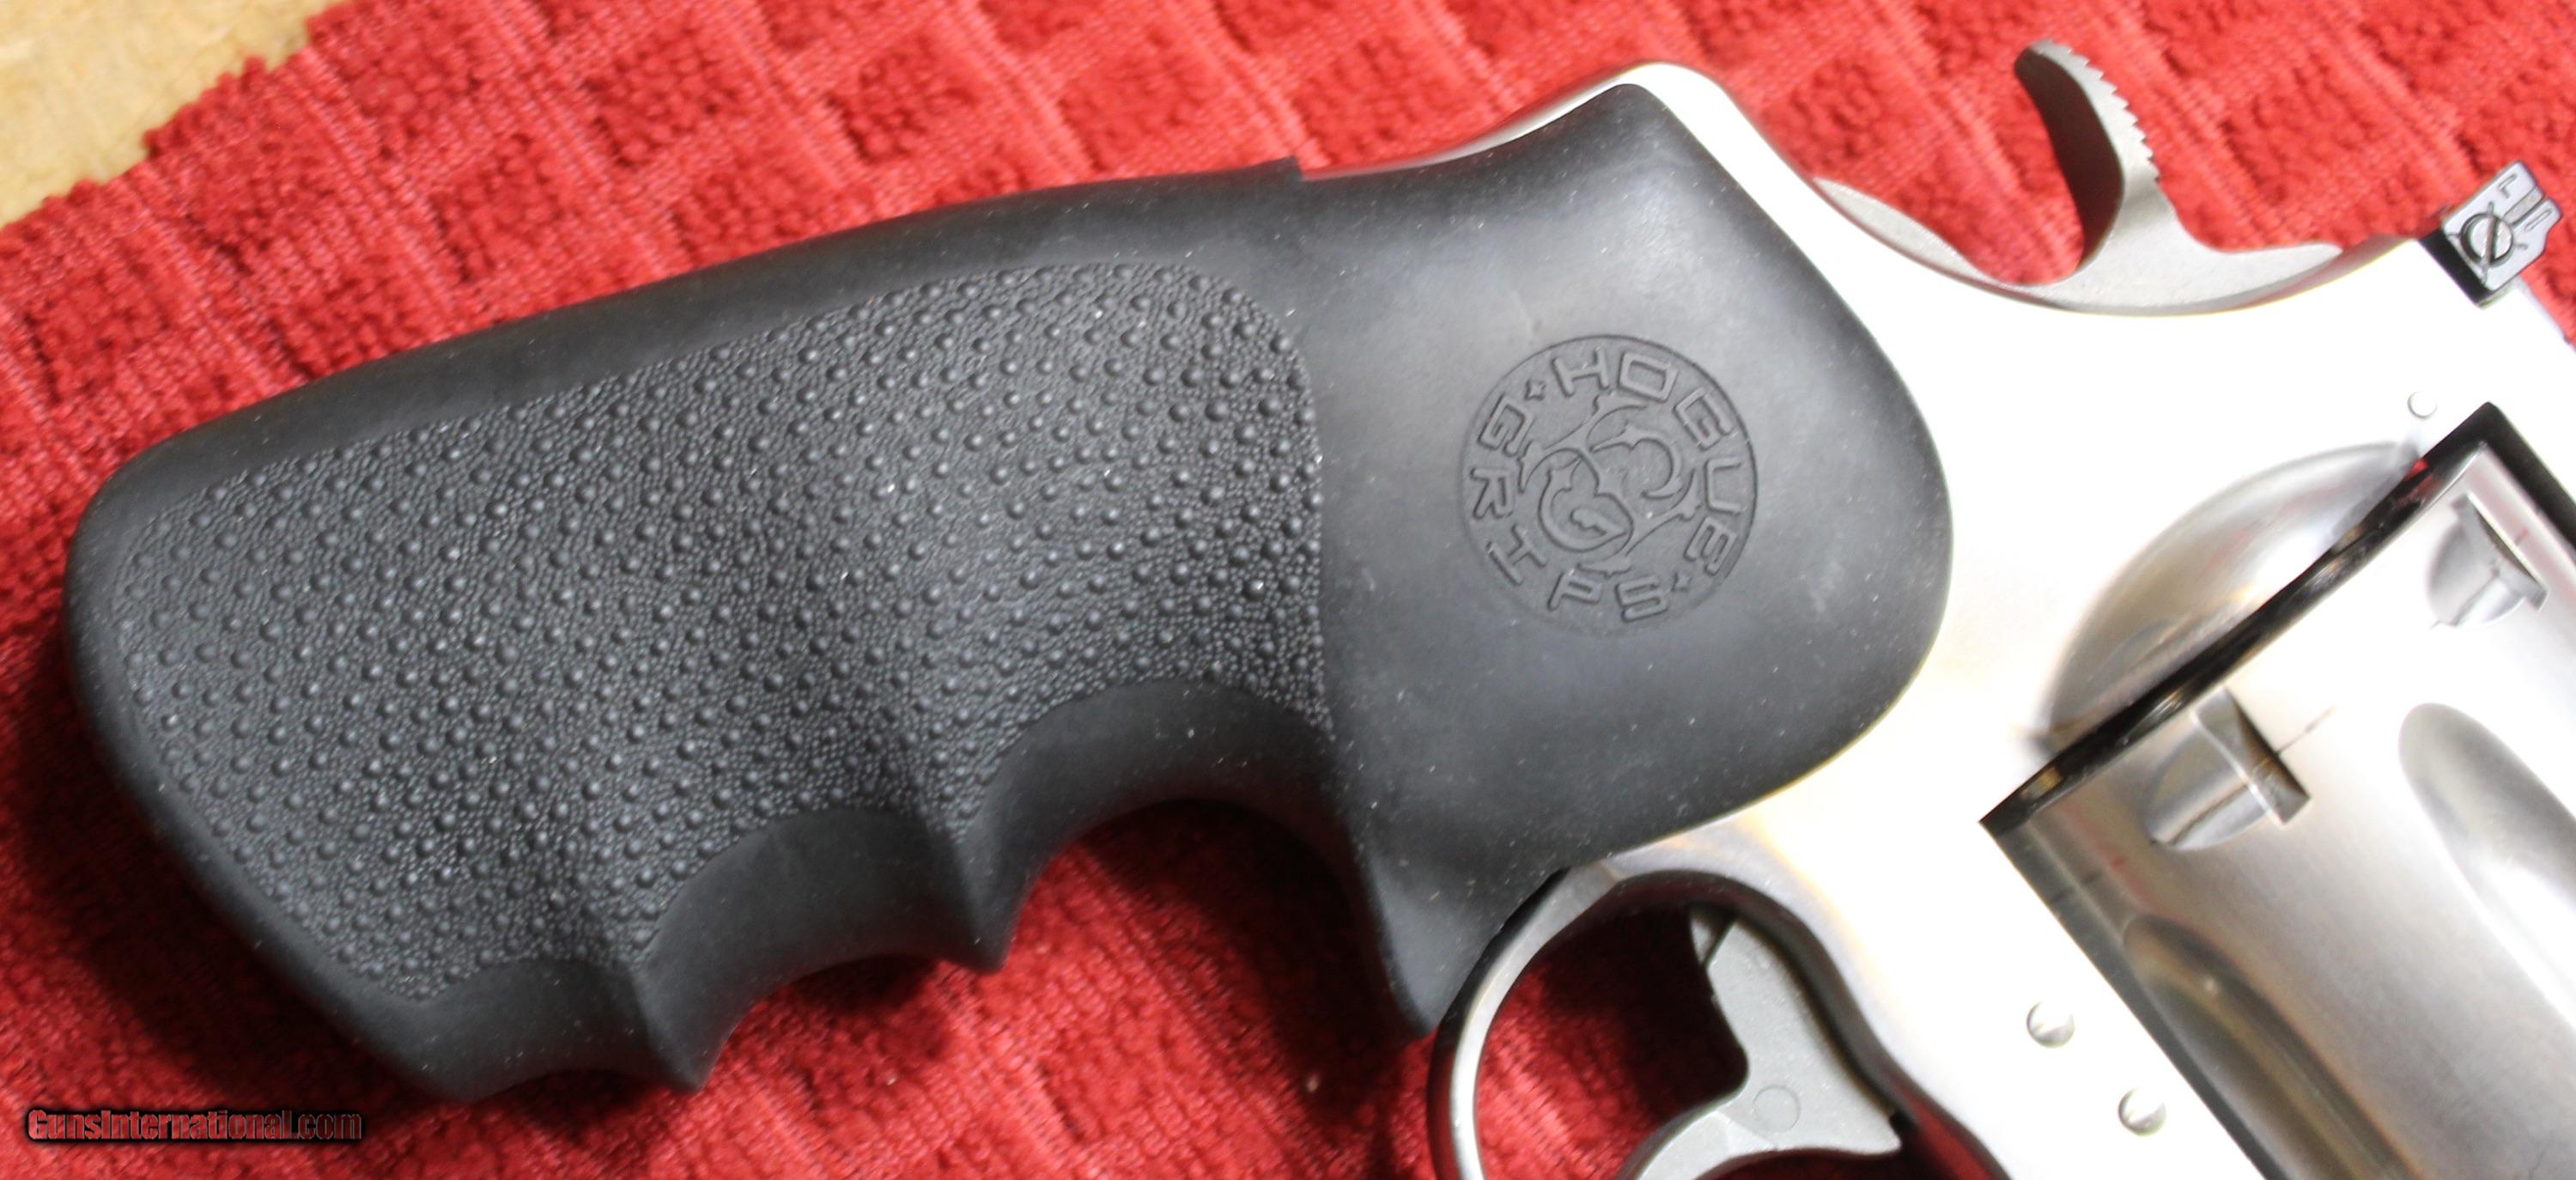 Colt Anaconda 44 Magnum 4